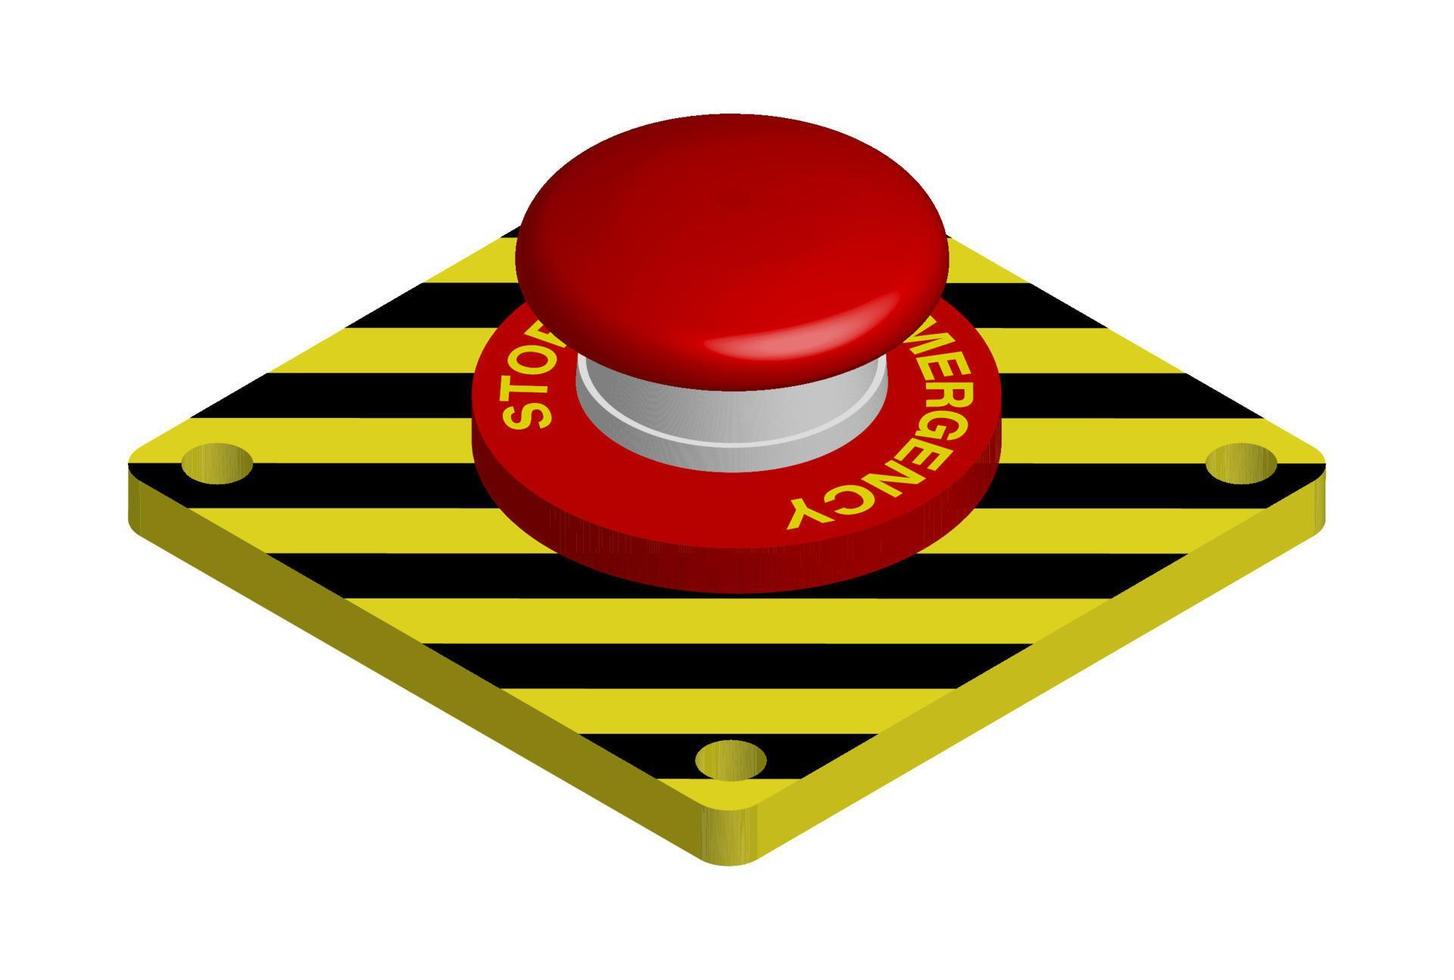 botón rojo de emergencia con rayas negras y amarillas. acciones en una situación de peligro. vector 3d realista sobre fondo blanco